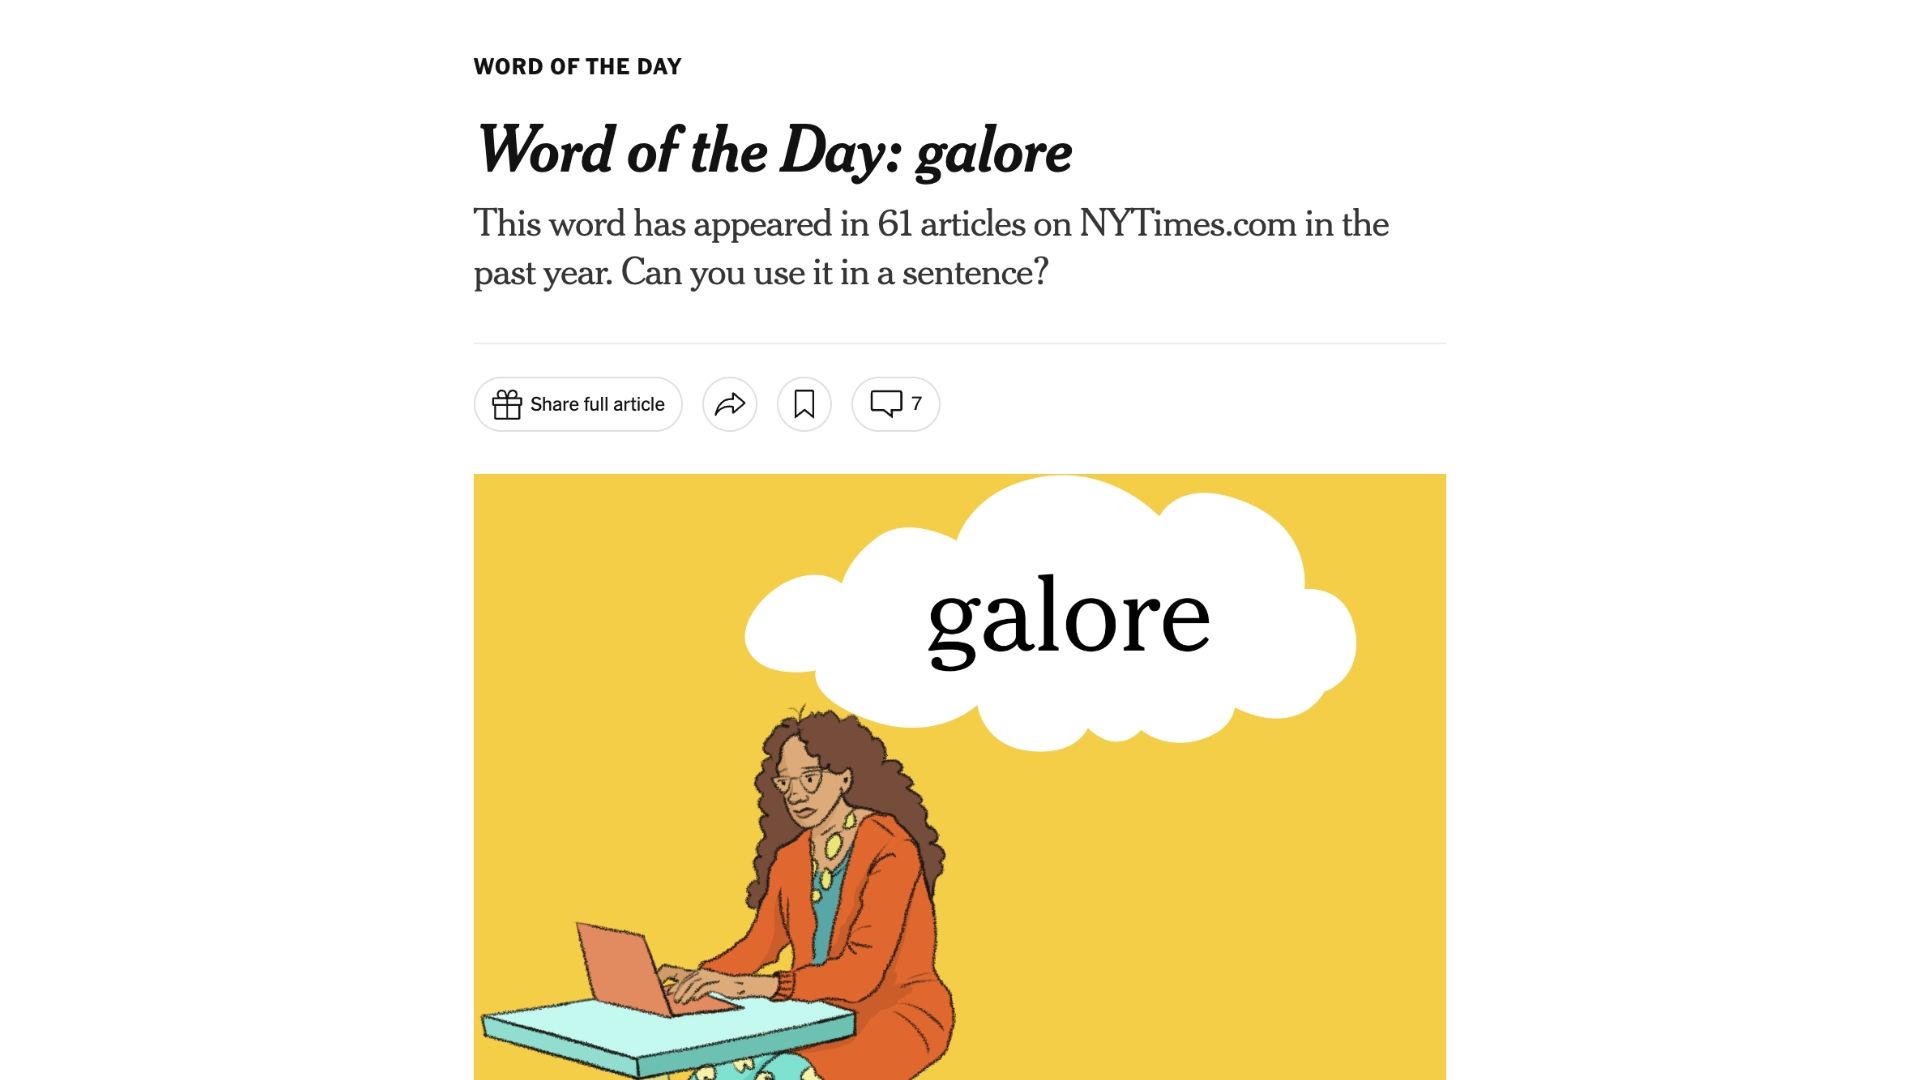 Página de Palabra del día del NYT que presenta la palabra Galore.